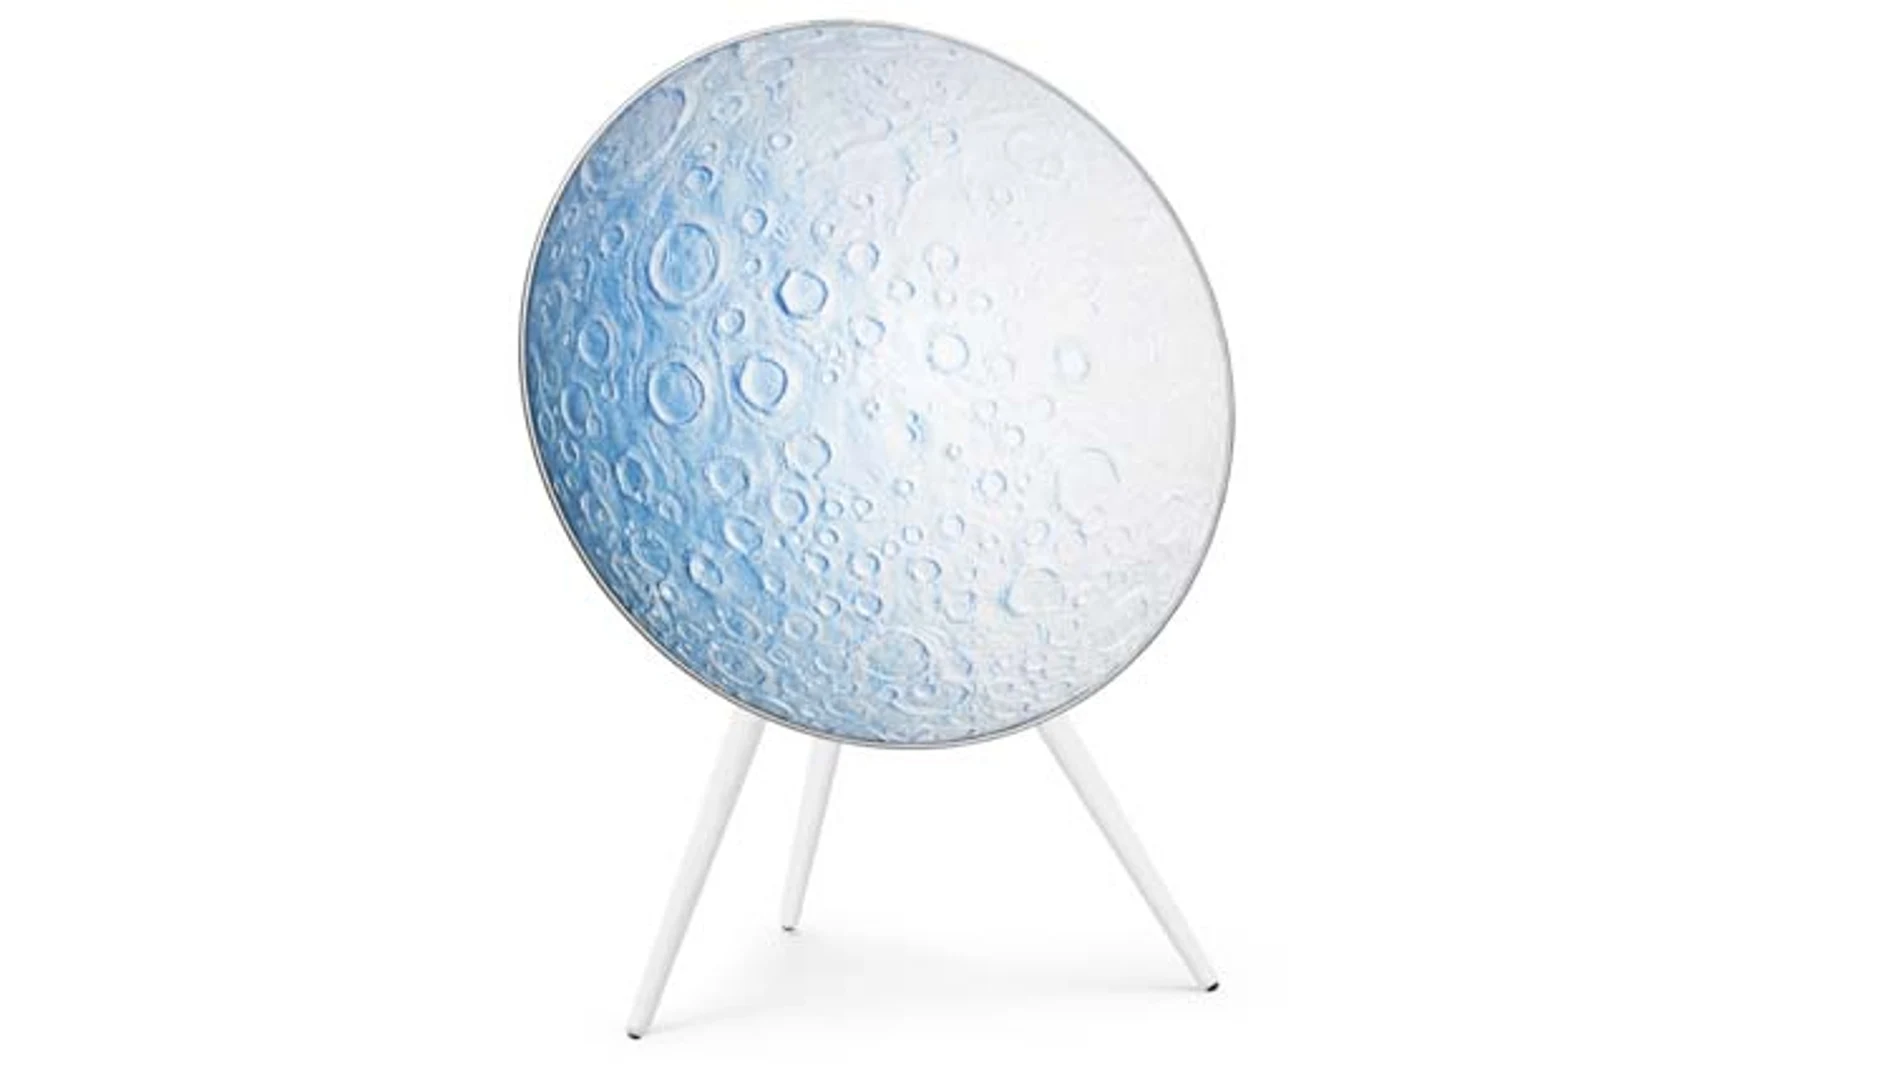 La cubierta de tela del altavoz Beoplay A9 sirve de lienzo para que el artista Daniel Arsham plasme su visión de la luna azul en esta edición limitada.